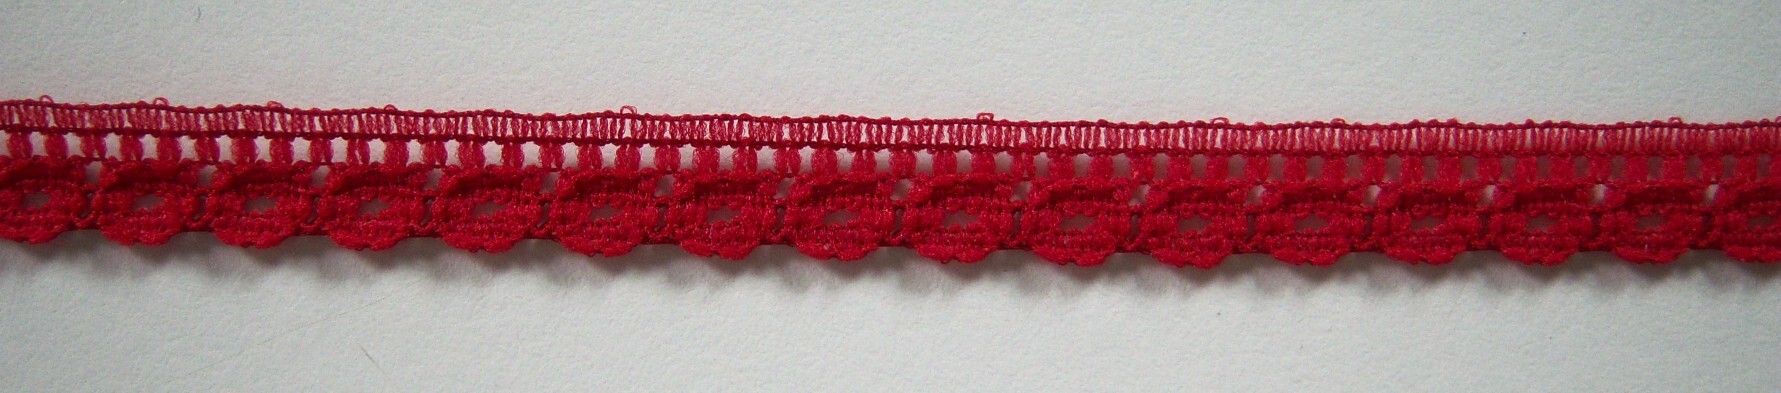 Cranberry 3/8" Lace